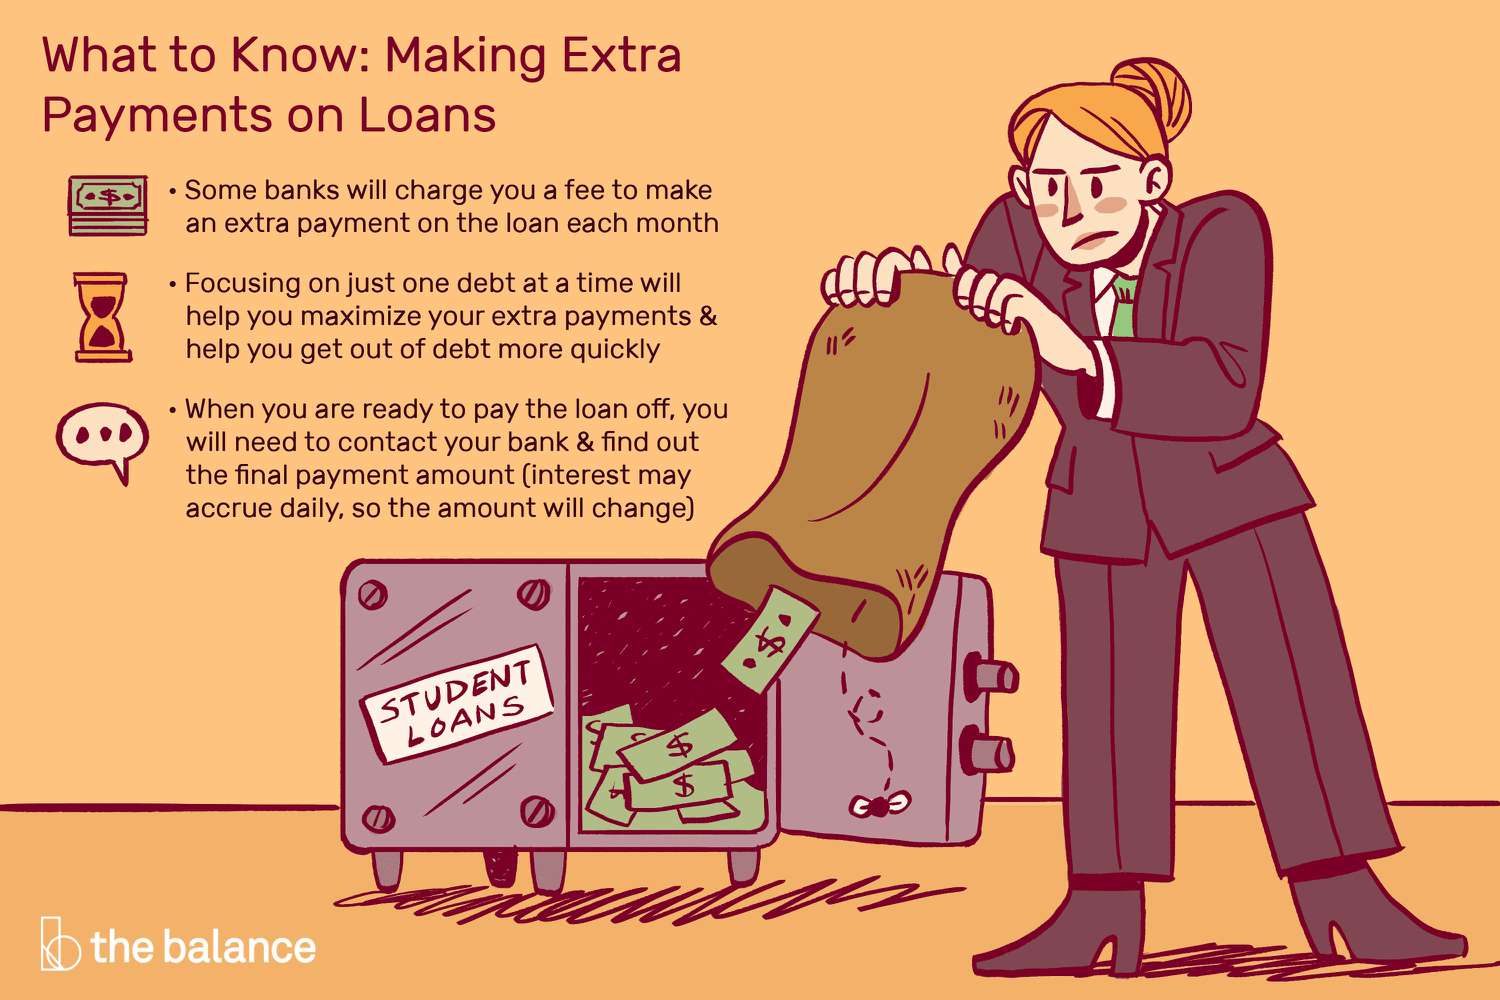 关于如何了解贷款额外付款的自定义说明。一个女人正把一袋钱倒进一个标着“学生贷款”的保险箱。